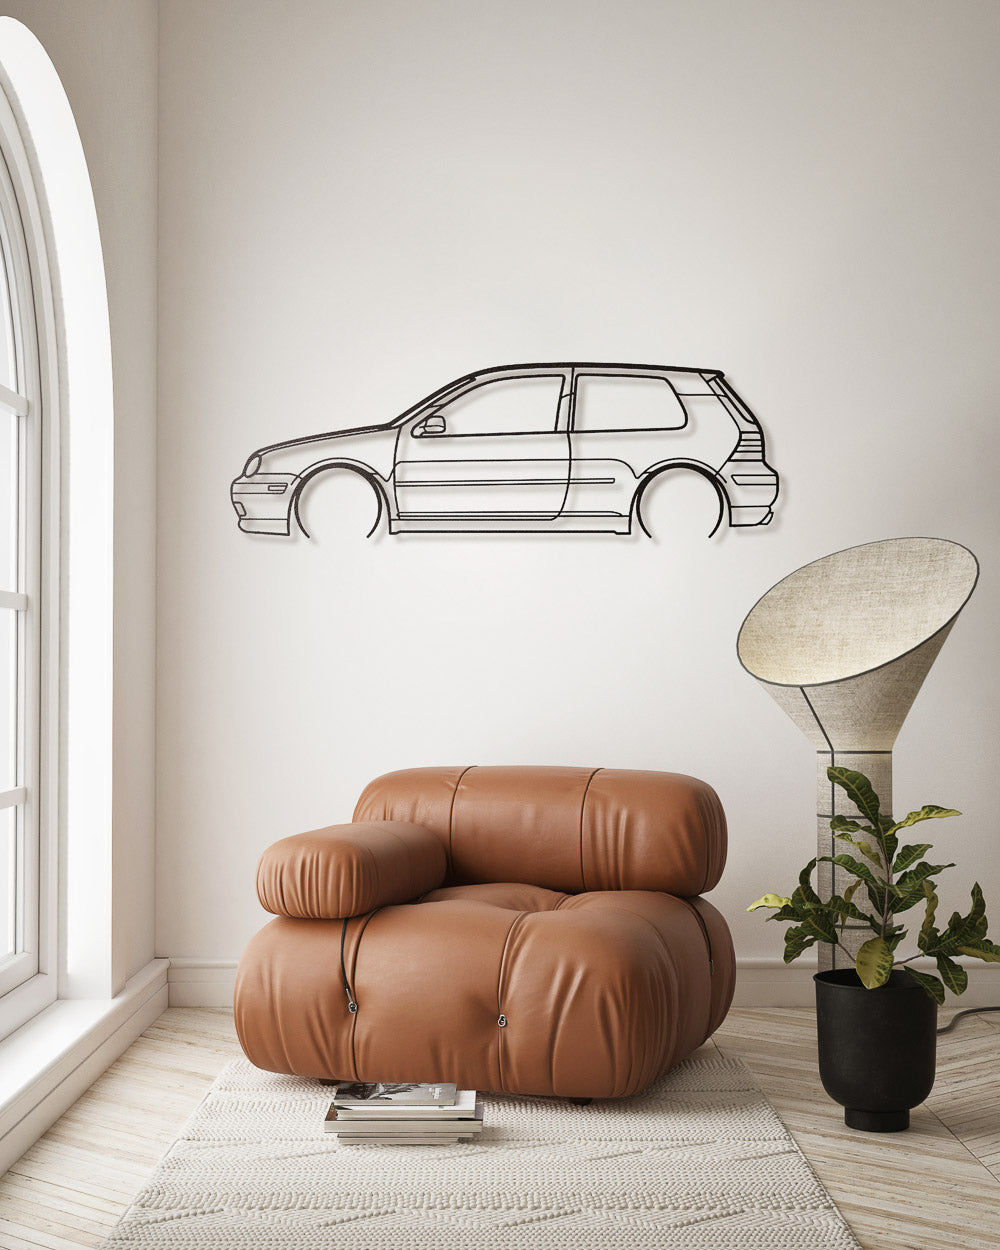 Nos - Volkswagen Golf GTI mk4 - Sagoma in Metallo di Design Dettagliata